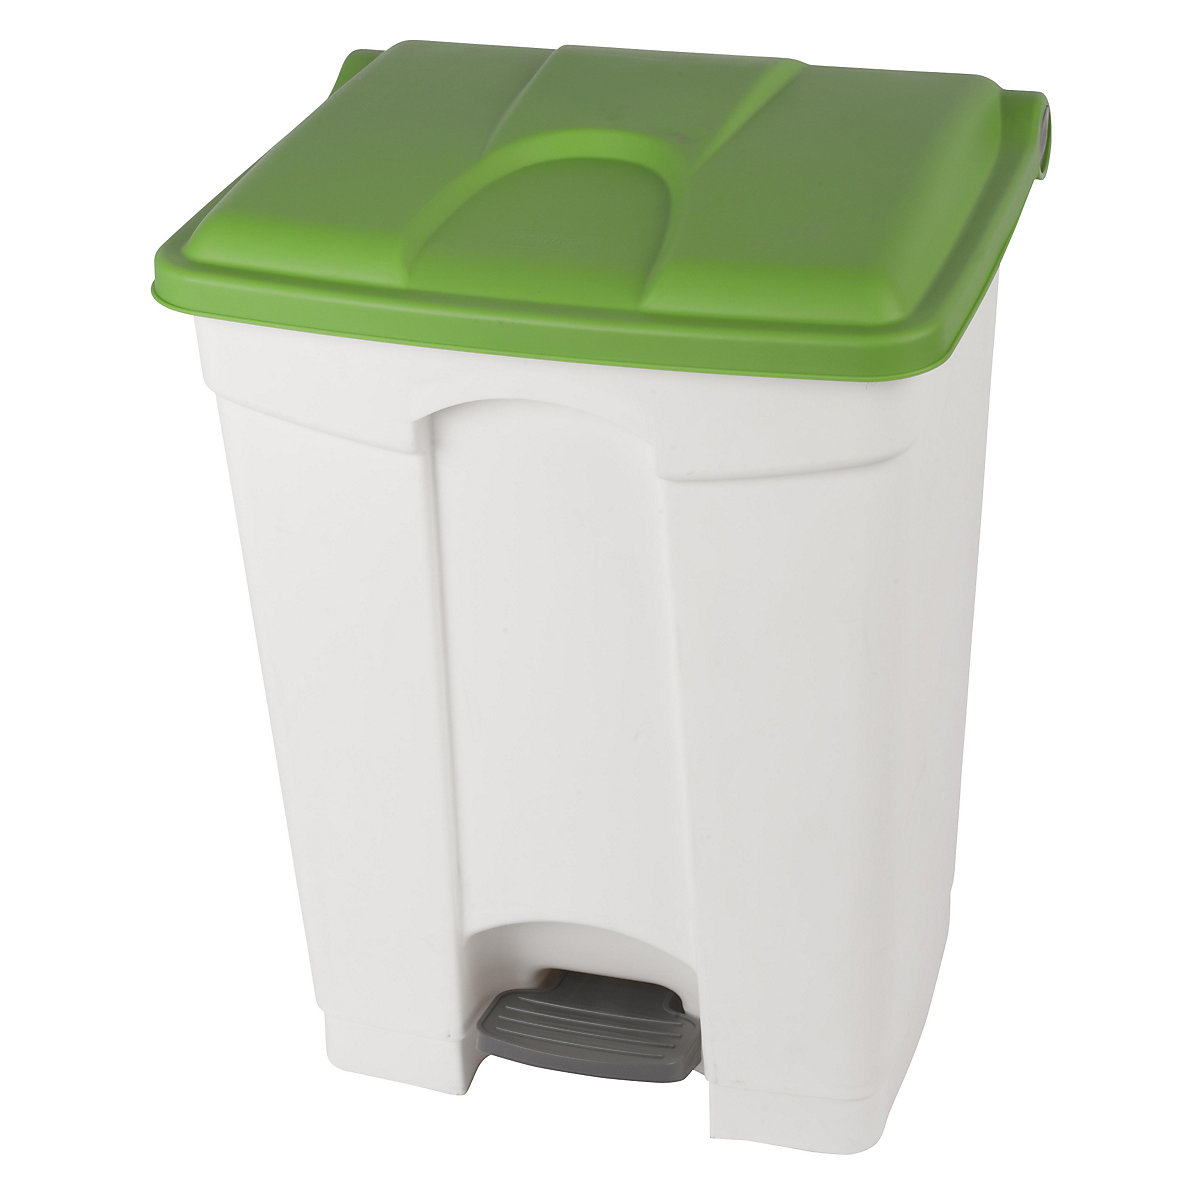 Spremnik za otpad s papučicom, volumen 70 l, ŠxVxD 505 x 675 x 415 mm, u bijeloj boji, poklopac u zelenoj boji-5